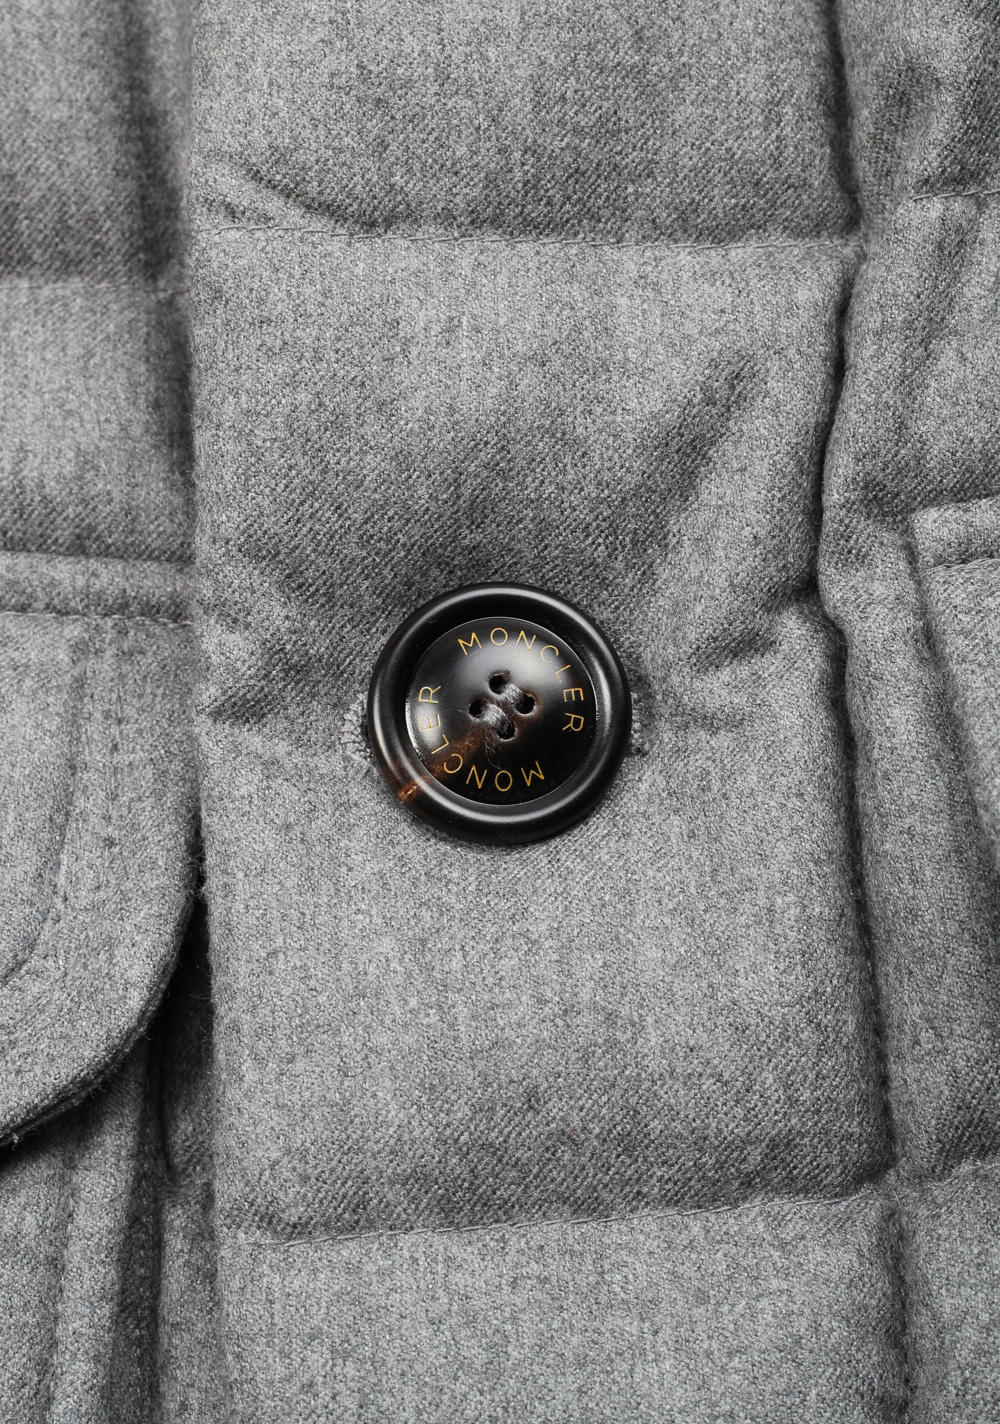 Moncler Gray Rethel Quilted Down Jacket Coat Size 5 / XL / 54 / 44 U.S. | Costume Limité